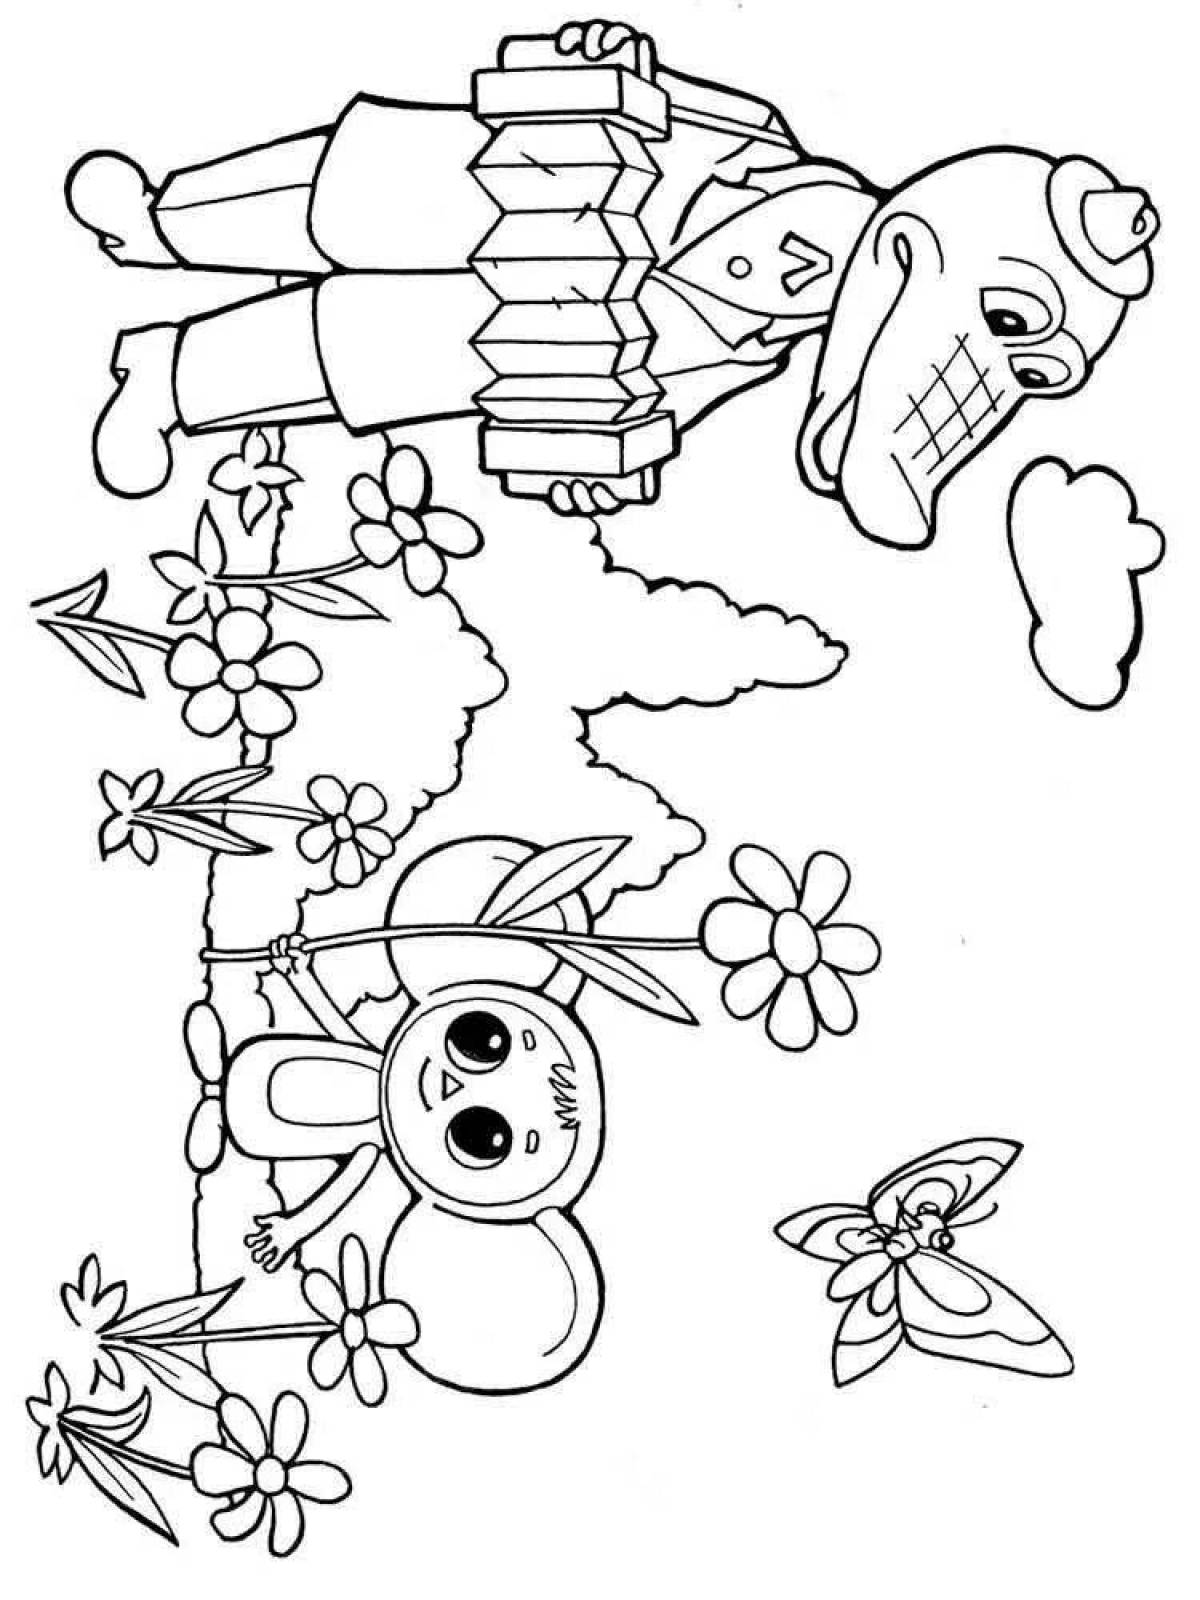 Интересная раскраска чебурашка для детей 5-6 лет